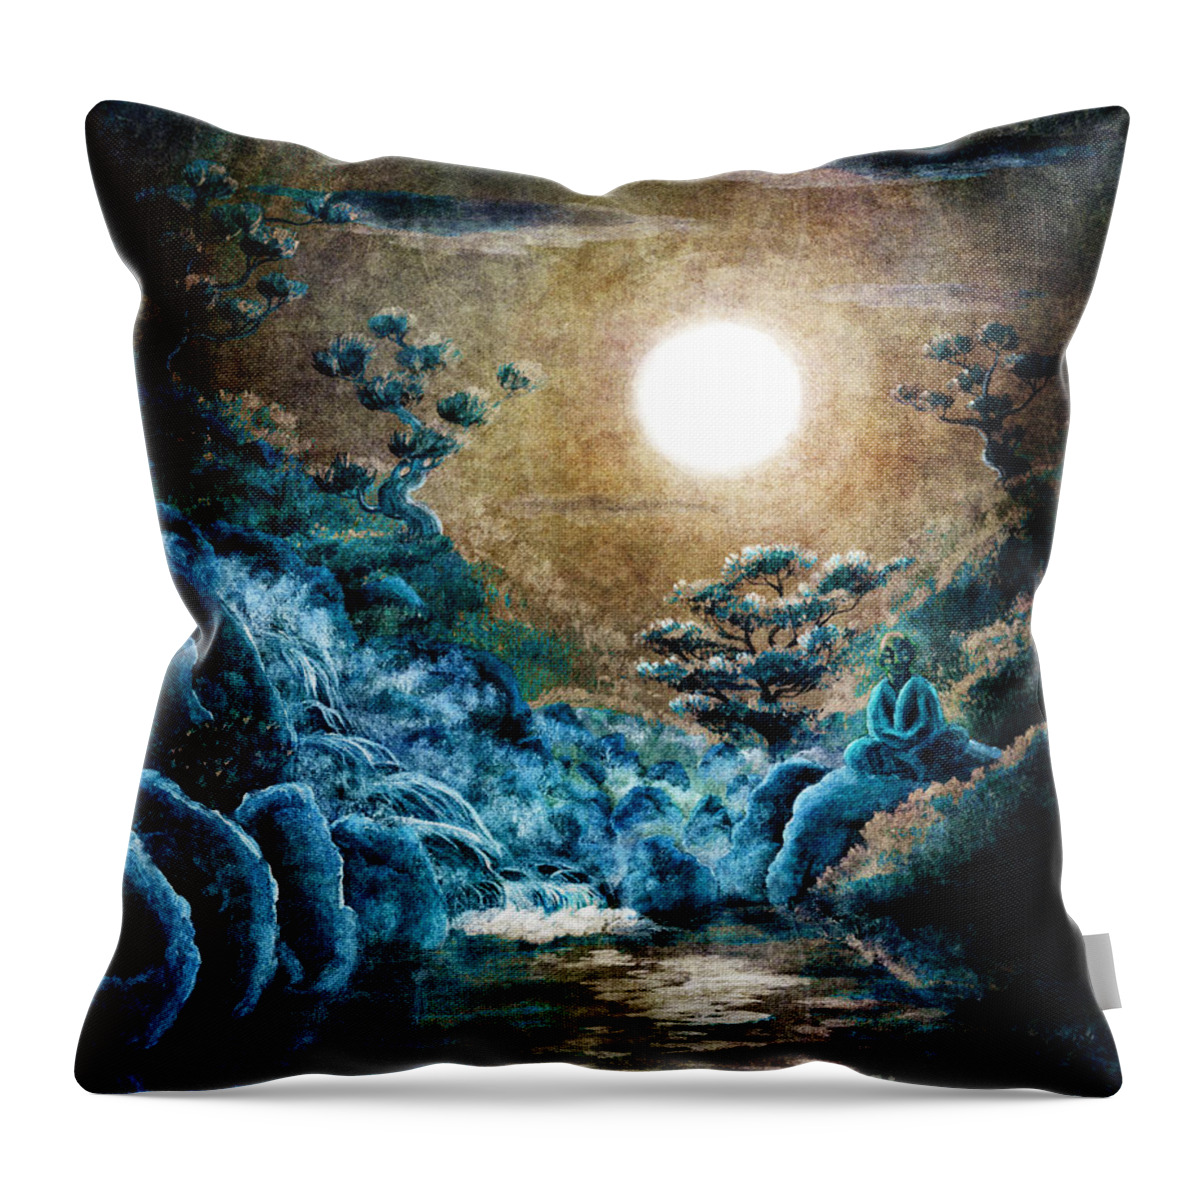 Zen Throw Pillow featuring the digital art Eternal Buddha Meditation by Laura Iverson